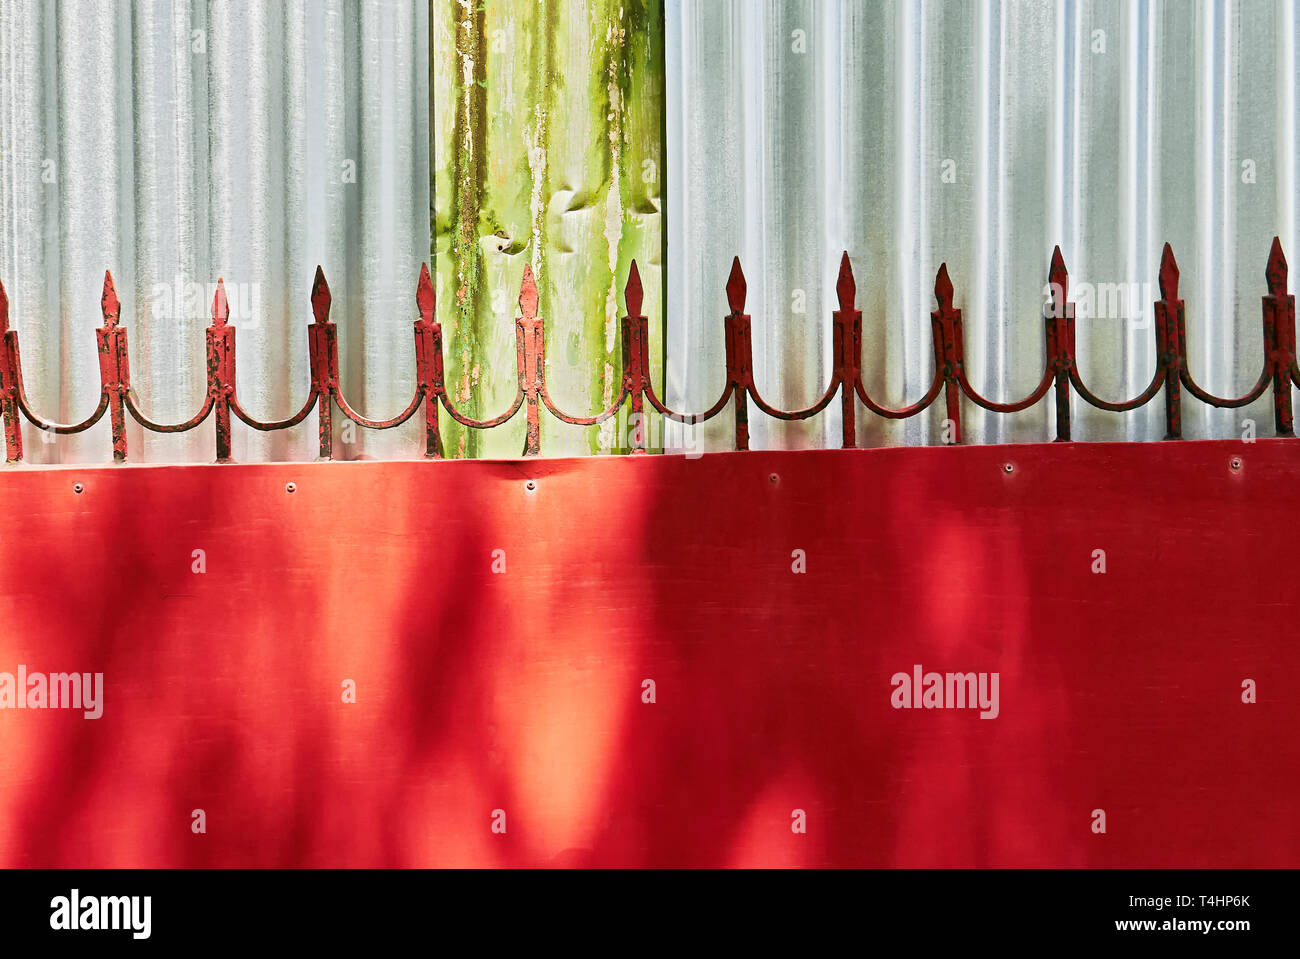 Detalle del diseño de una puerta de metal rojo con flechas soldado adjunta al borde superior, fotografiado contra una pared de planchas de metal corrugado color plata Foto de stock